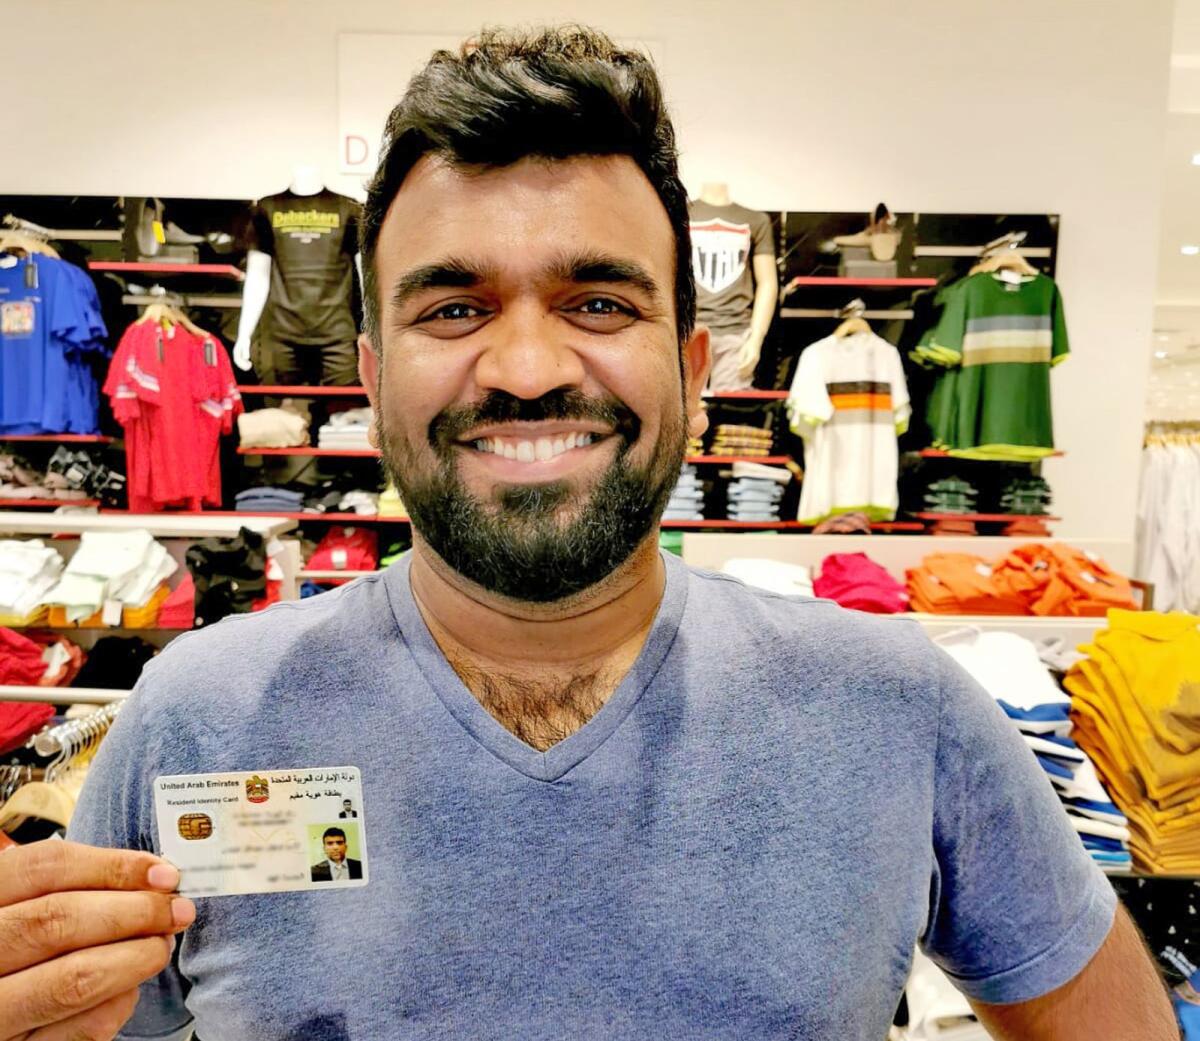 Indijos pilietis Uttesh Hegde yra vienas iš pirmųjų emigrantų, gavusių naują Emyratų asmens tapatybės dokumentą su išsamia gyvenamosios vietos vizos informacija.  Pateikta nuotrauka